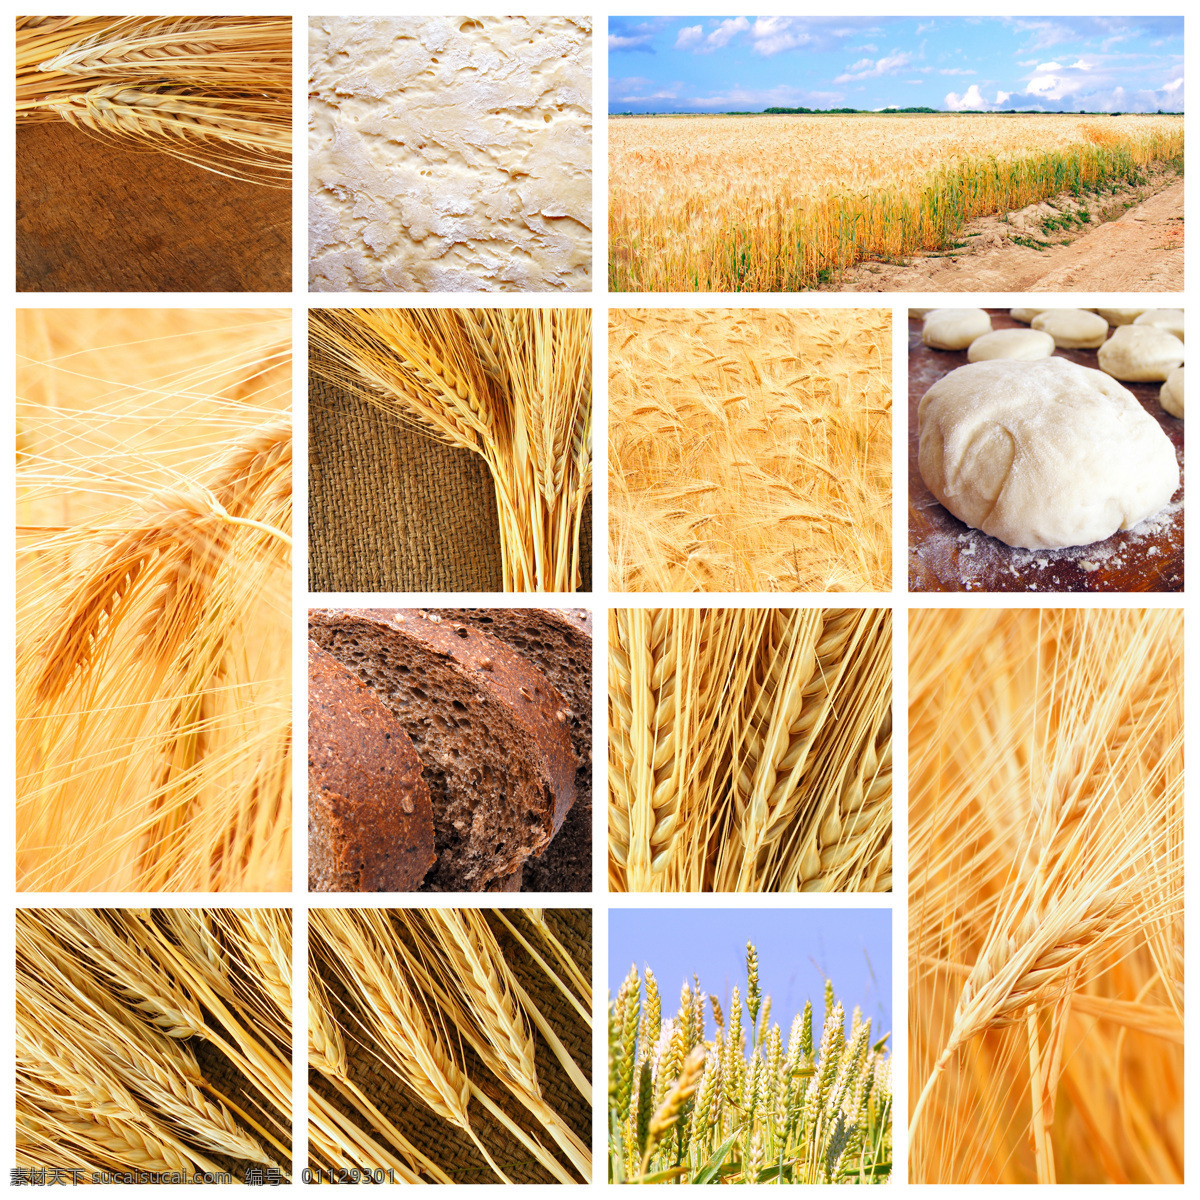 麦子 丰收 图片集 自然风景 麦田 麦穗 全麦面包 丰收景象 秋景 秋意 自然景观 白色